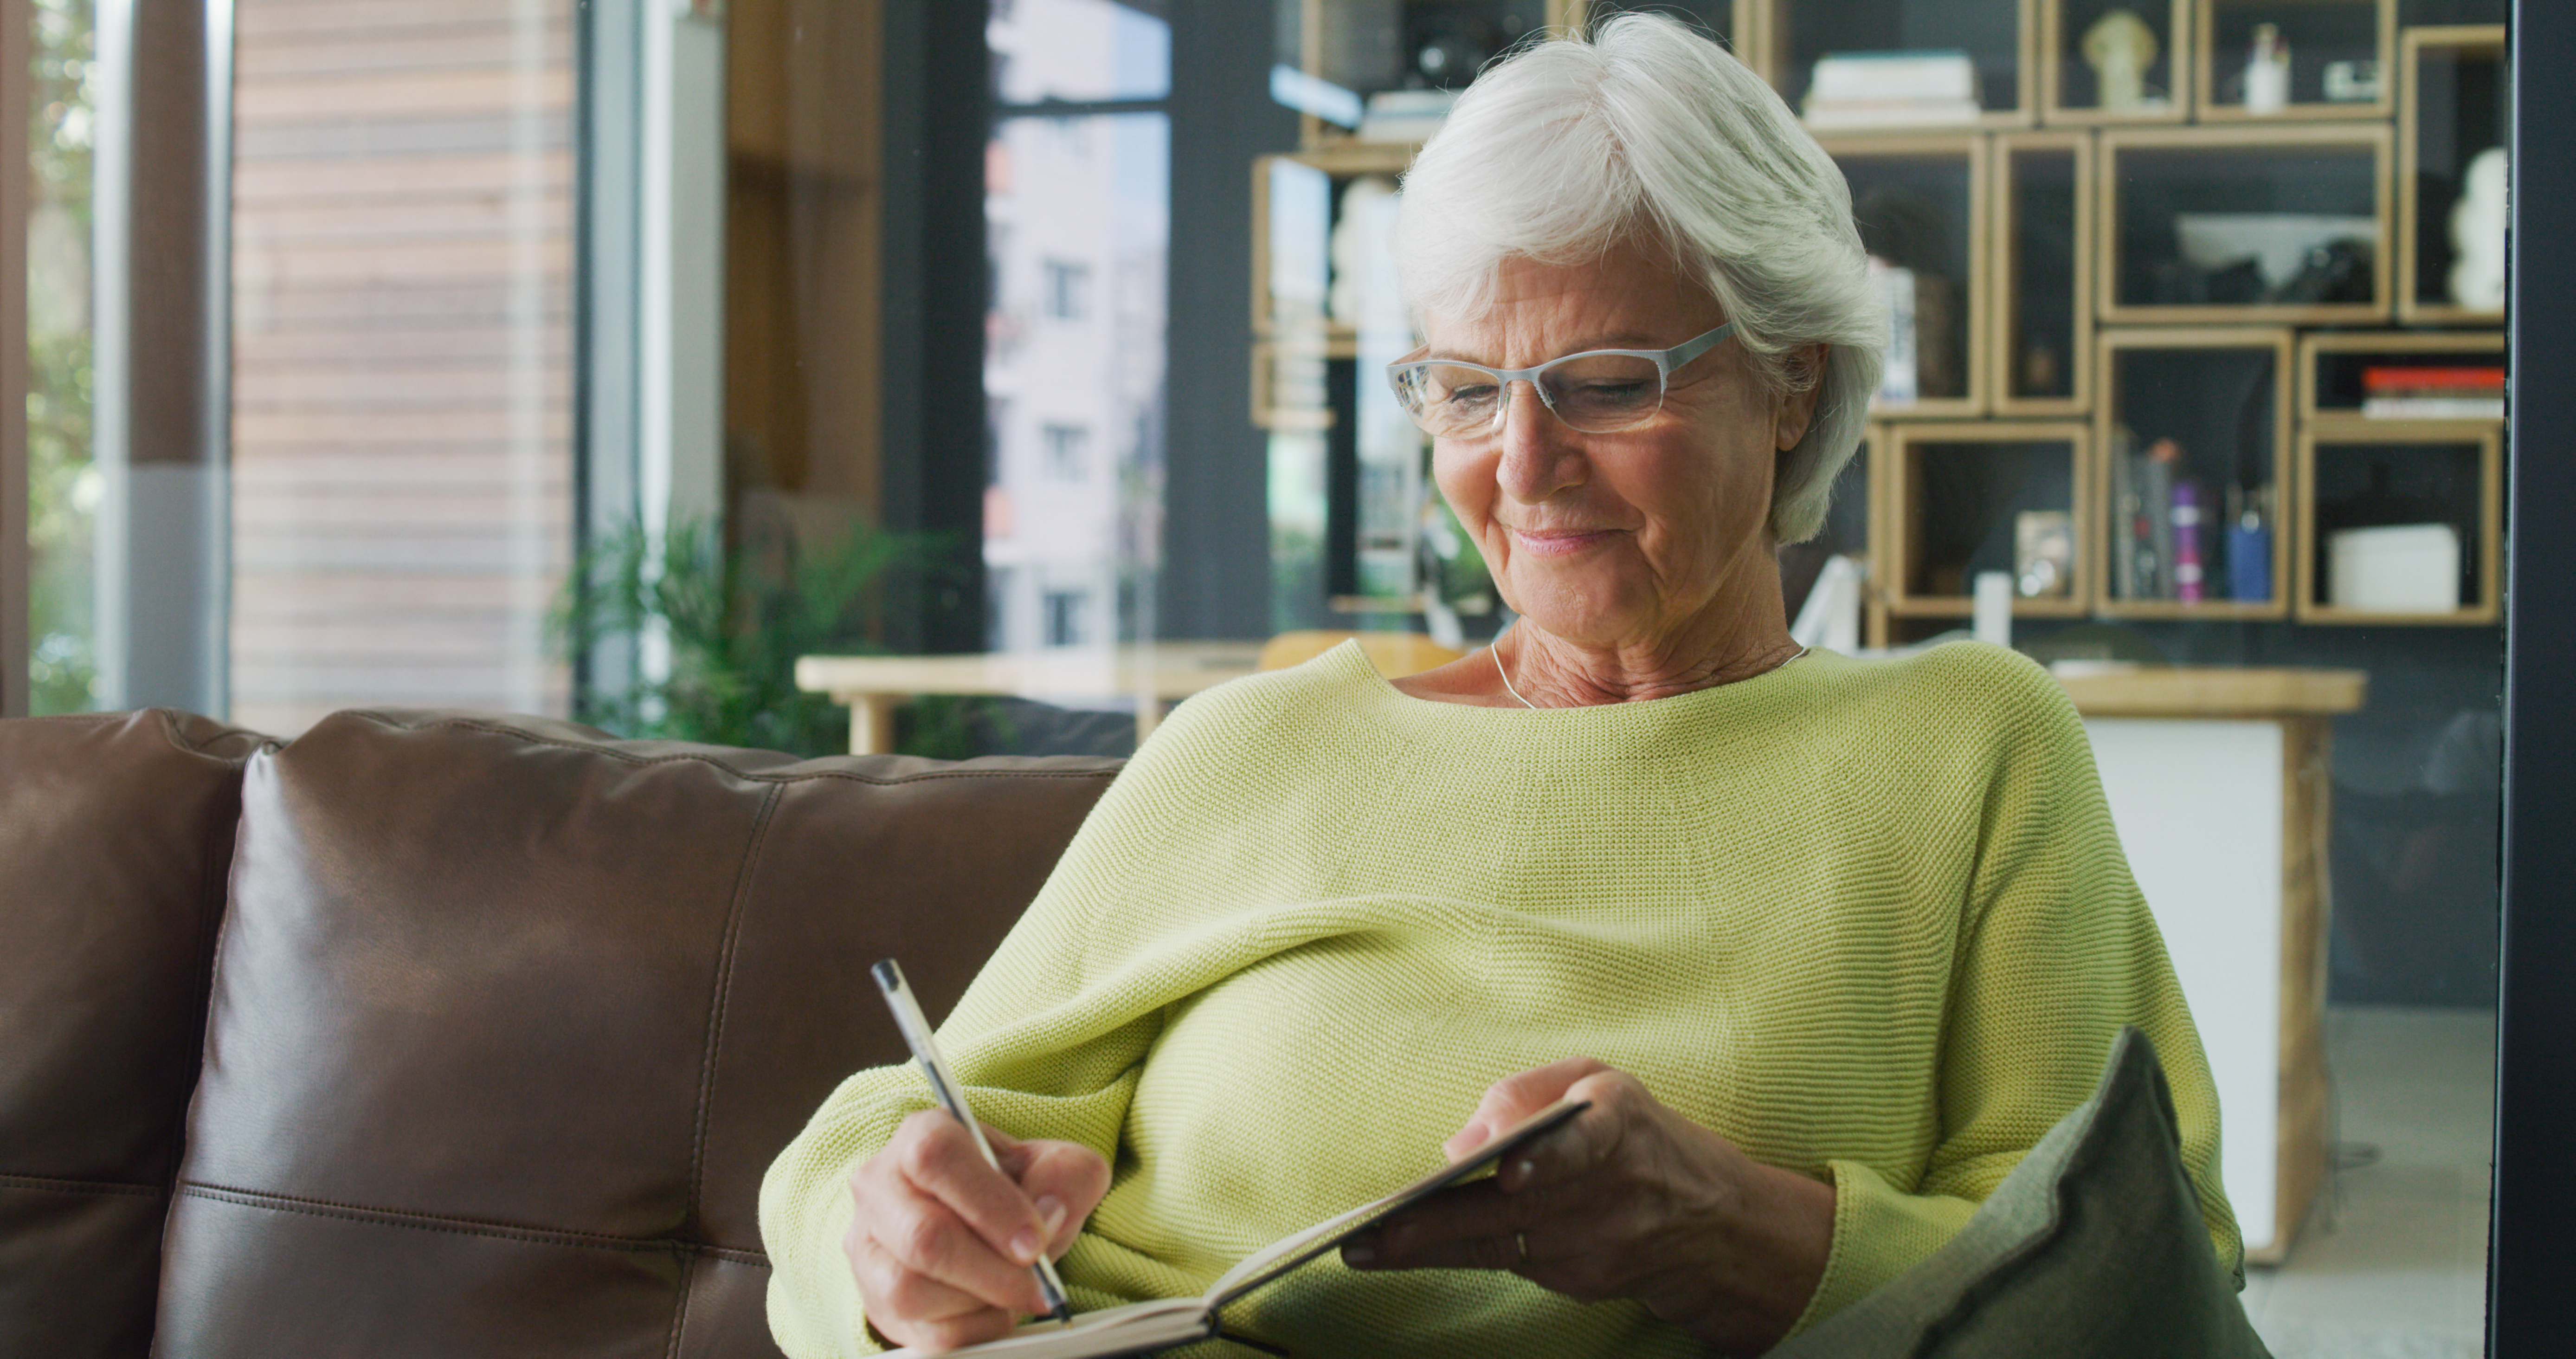 Prise de vue d'une femme âgée qui écrit dans un journal à la maison | Source : Getty Images